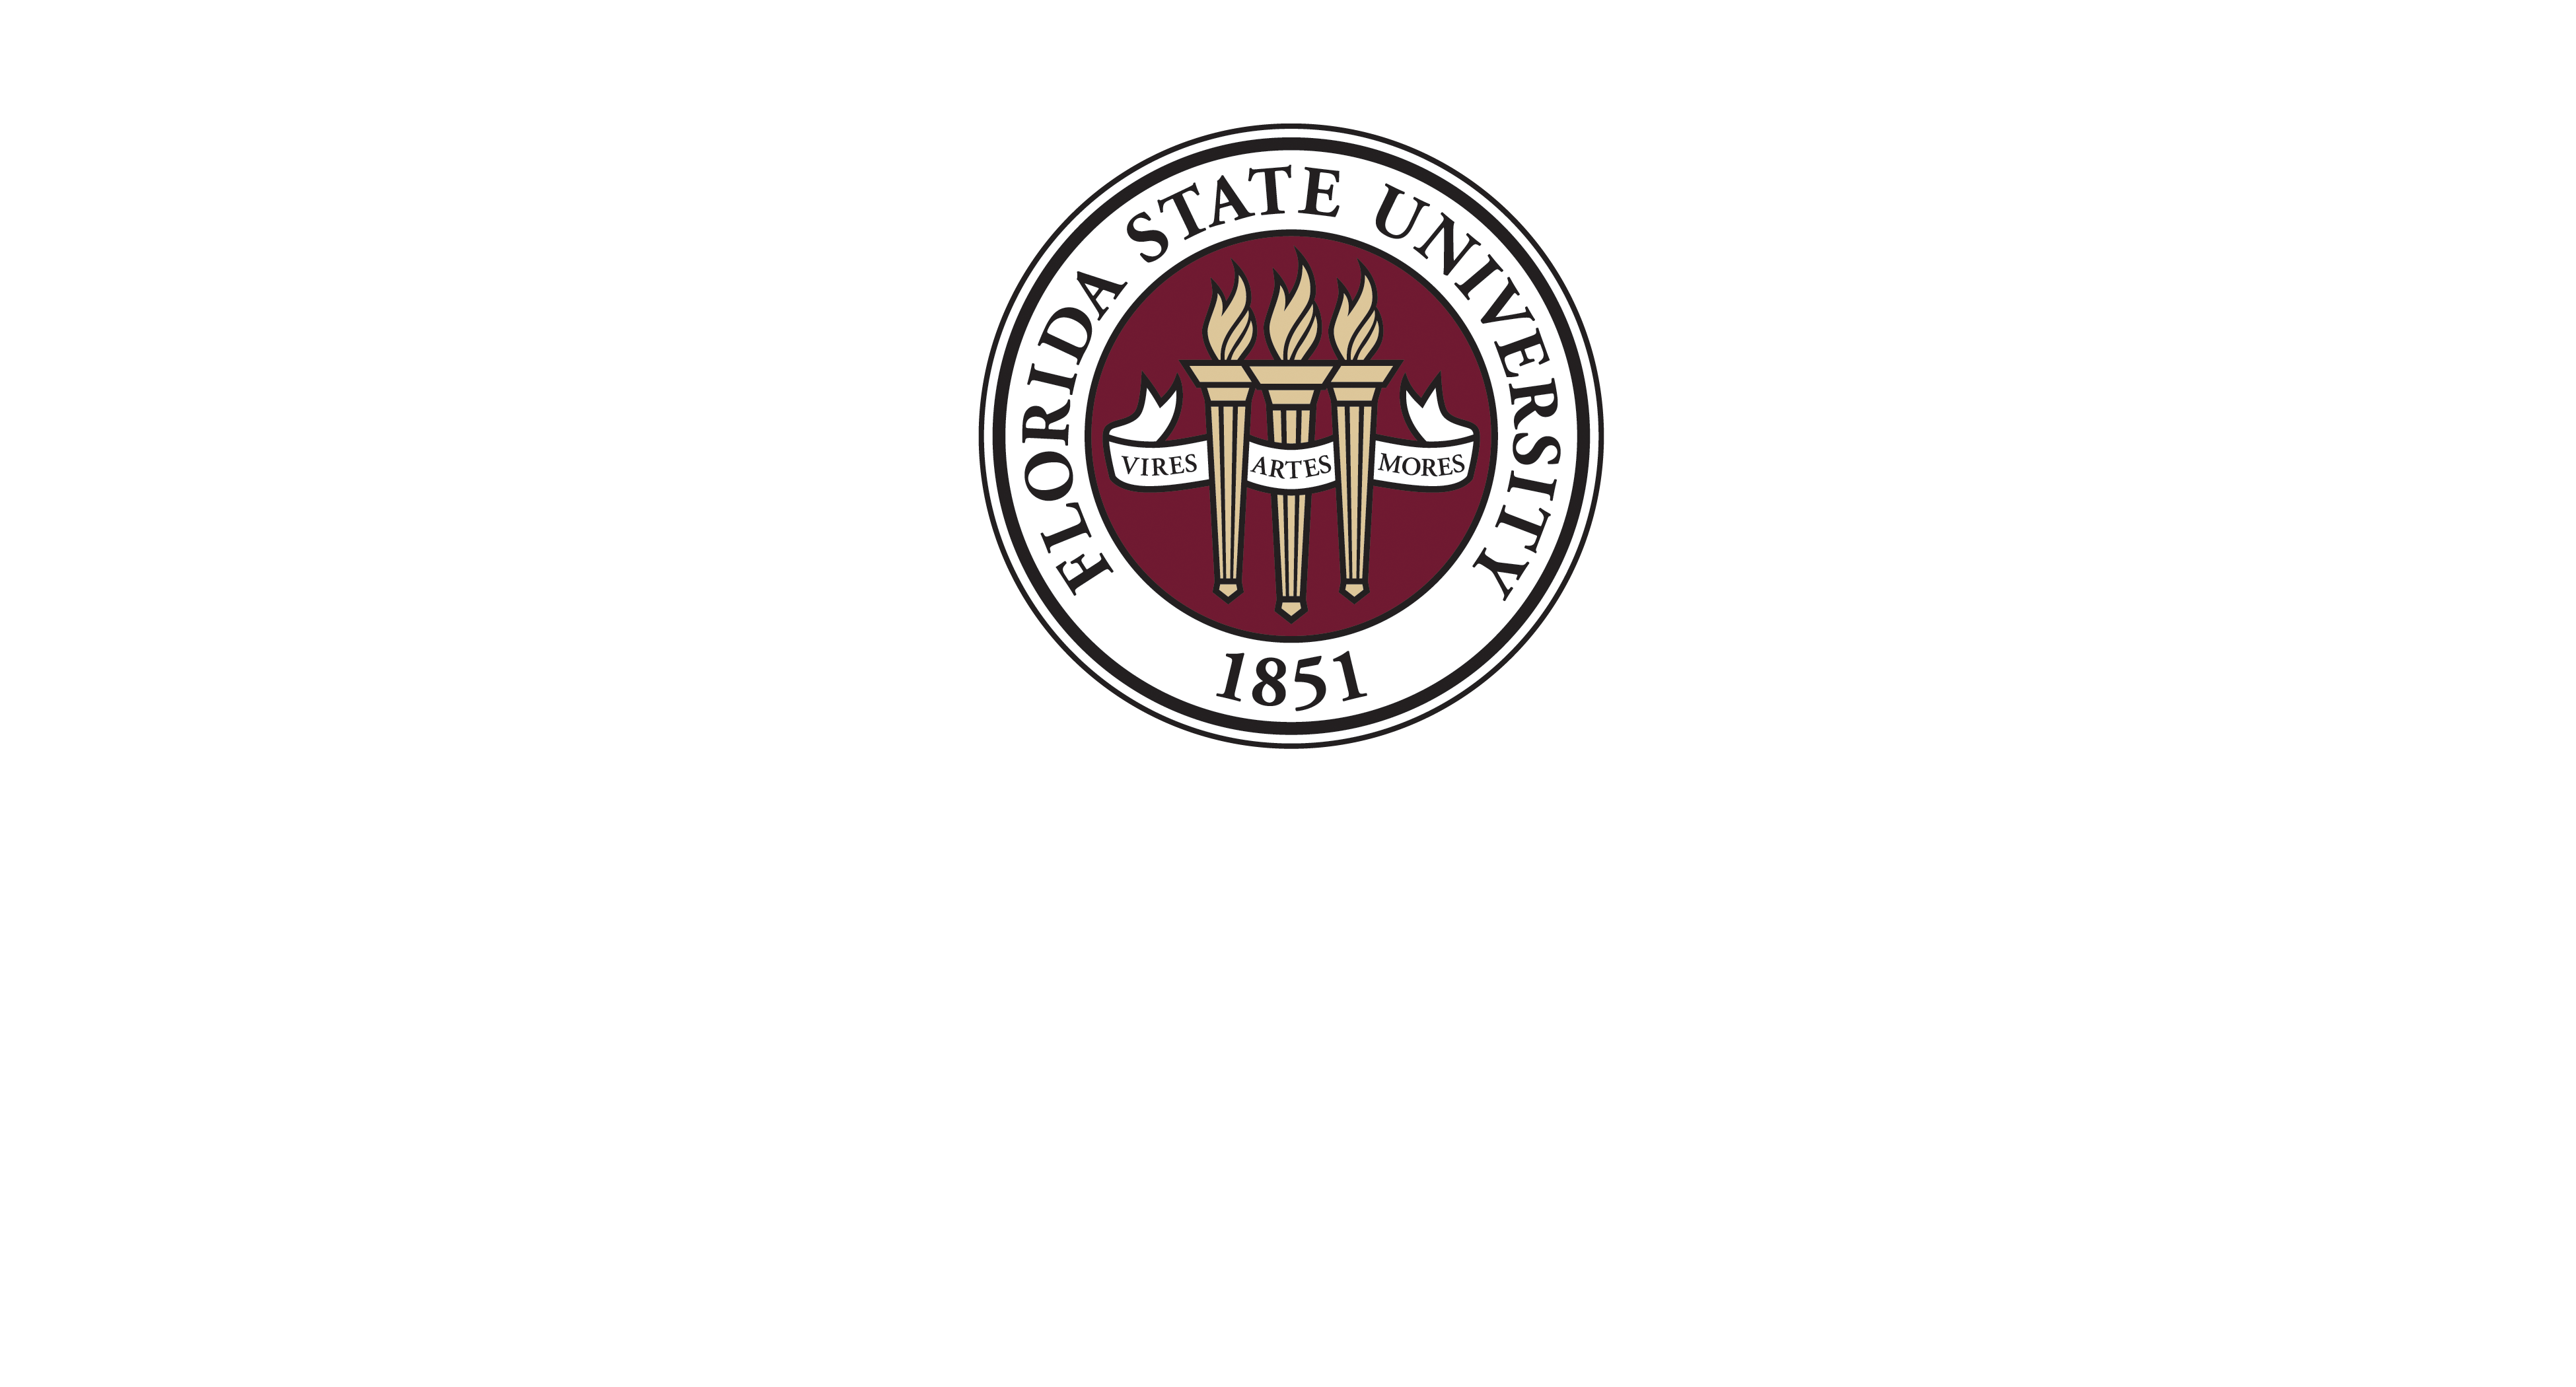 Jim Moran College of Entrepreneurship InNOLEvation Center for Student Engagement logo